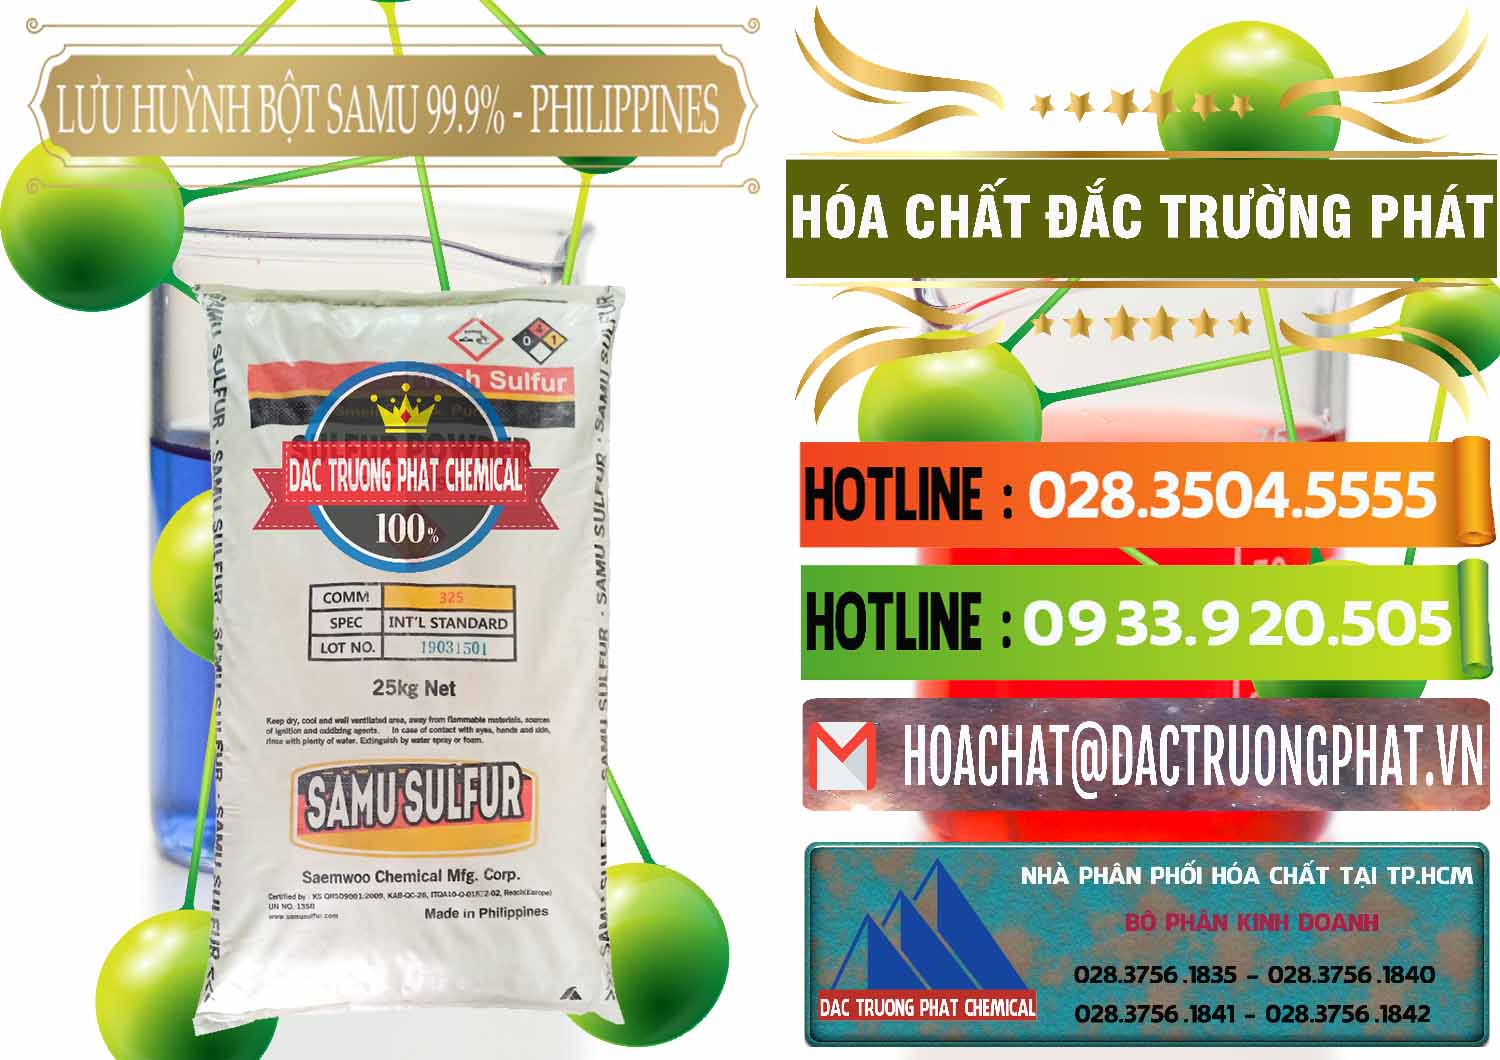 Công ty bán và cung cấp Lưu huỳnh Bột - Sulfur Powder Samu Philippines - 0201 - Nơi phân phối _ cung cấp hóa chất tại TP.HCM - cungcaphoachat.com.vn